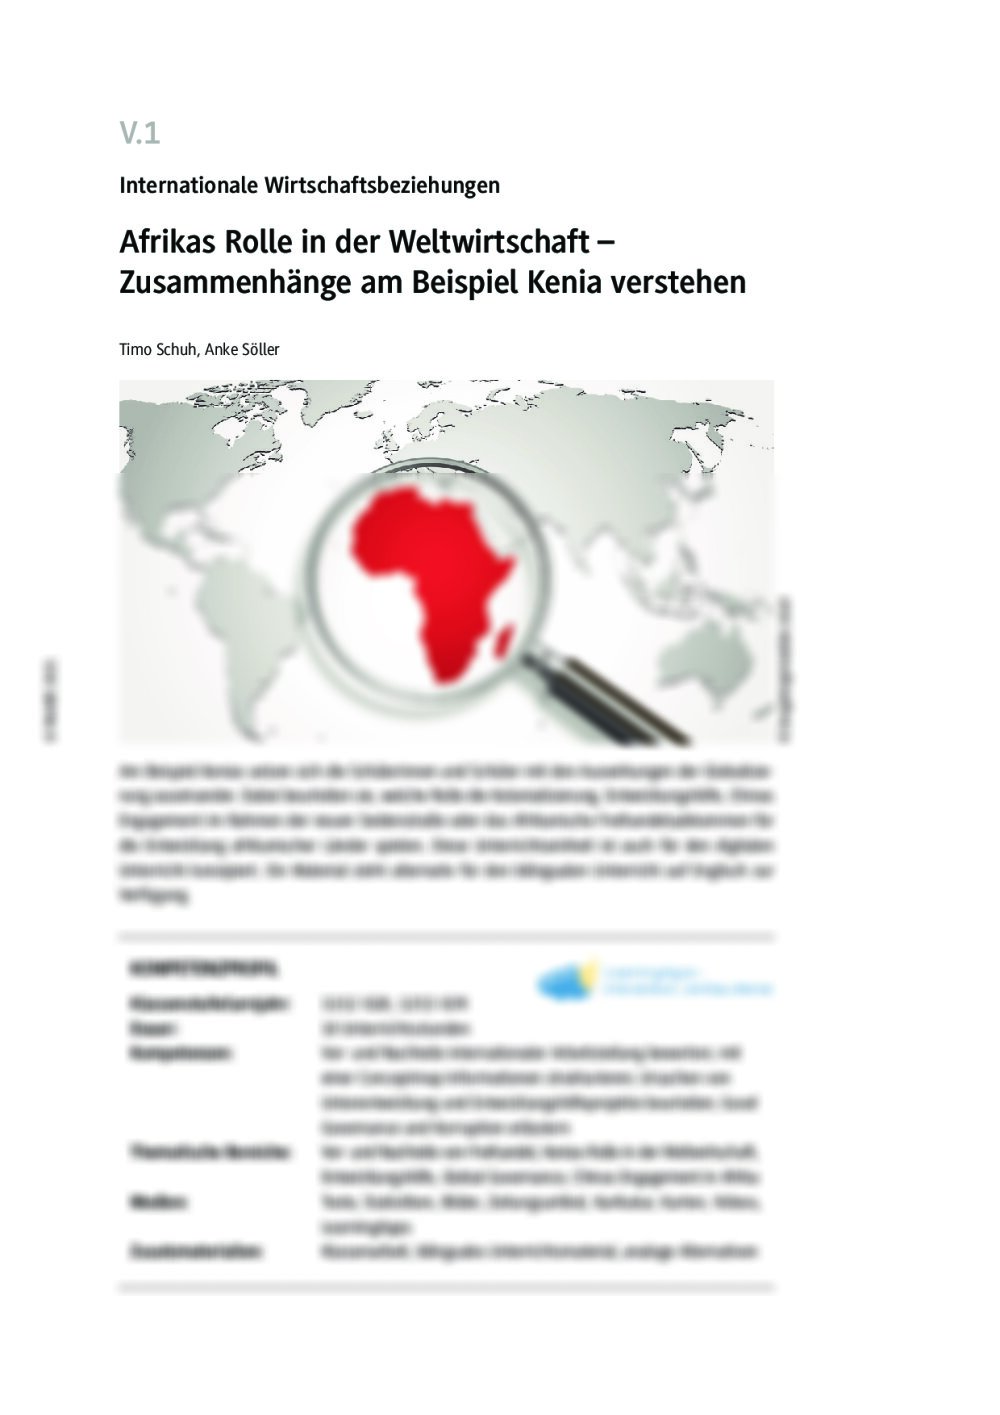 Afrika: Gewinner oder Verlierer der globalisierten Weltwirtschaft? - Seite 1